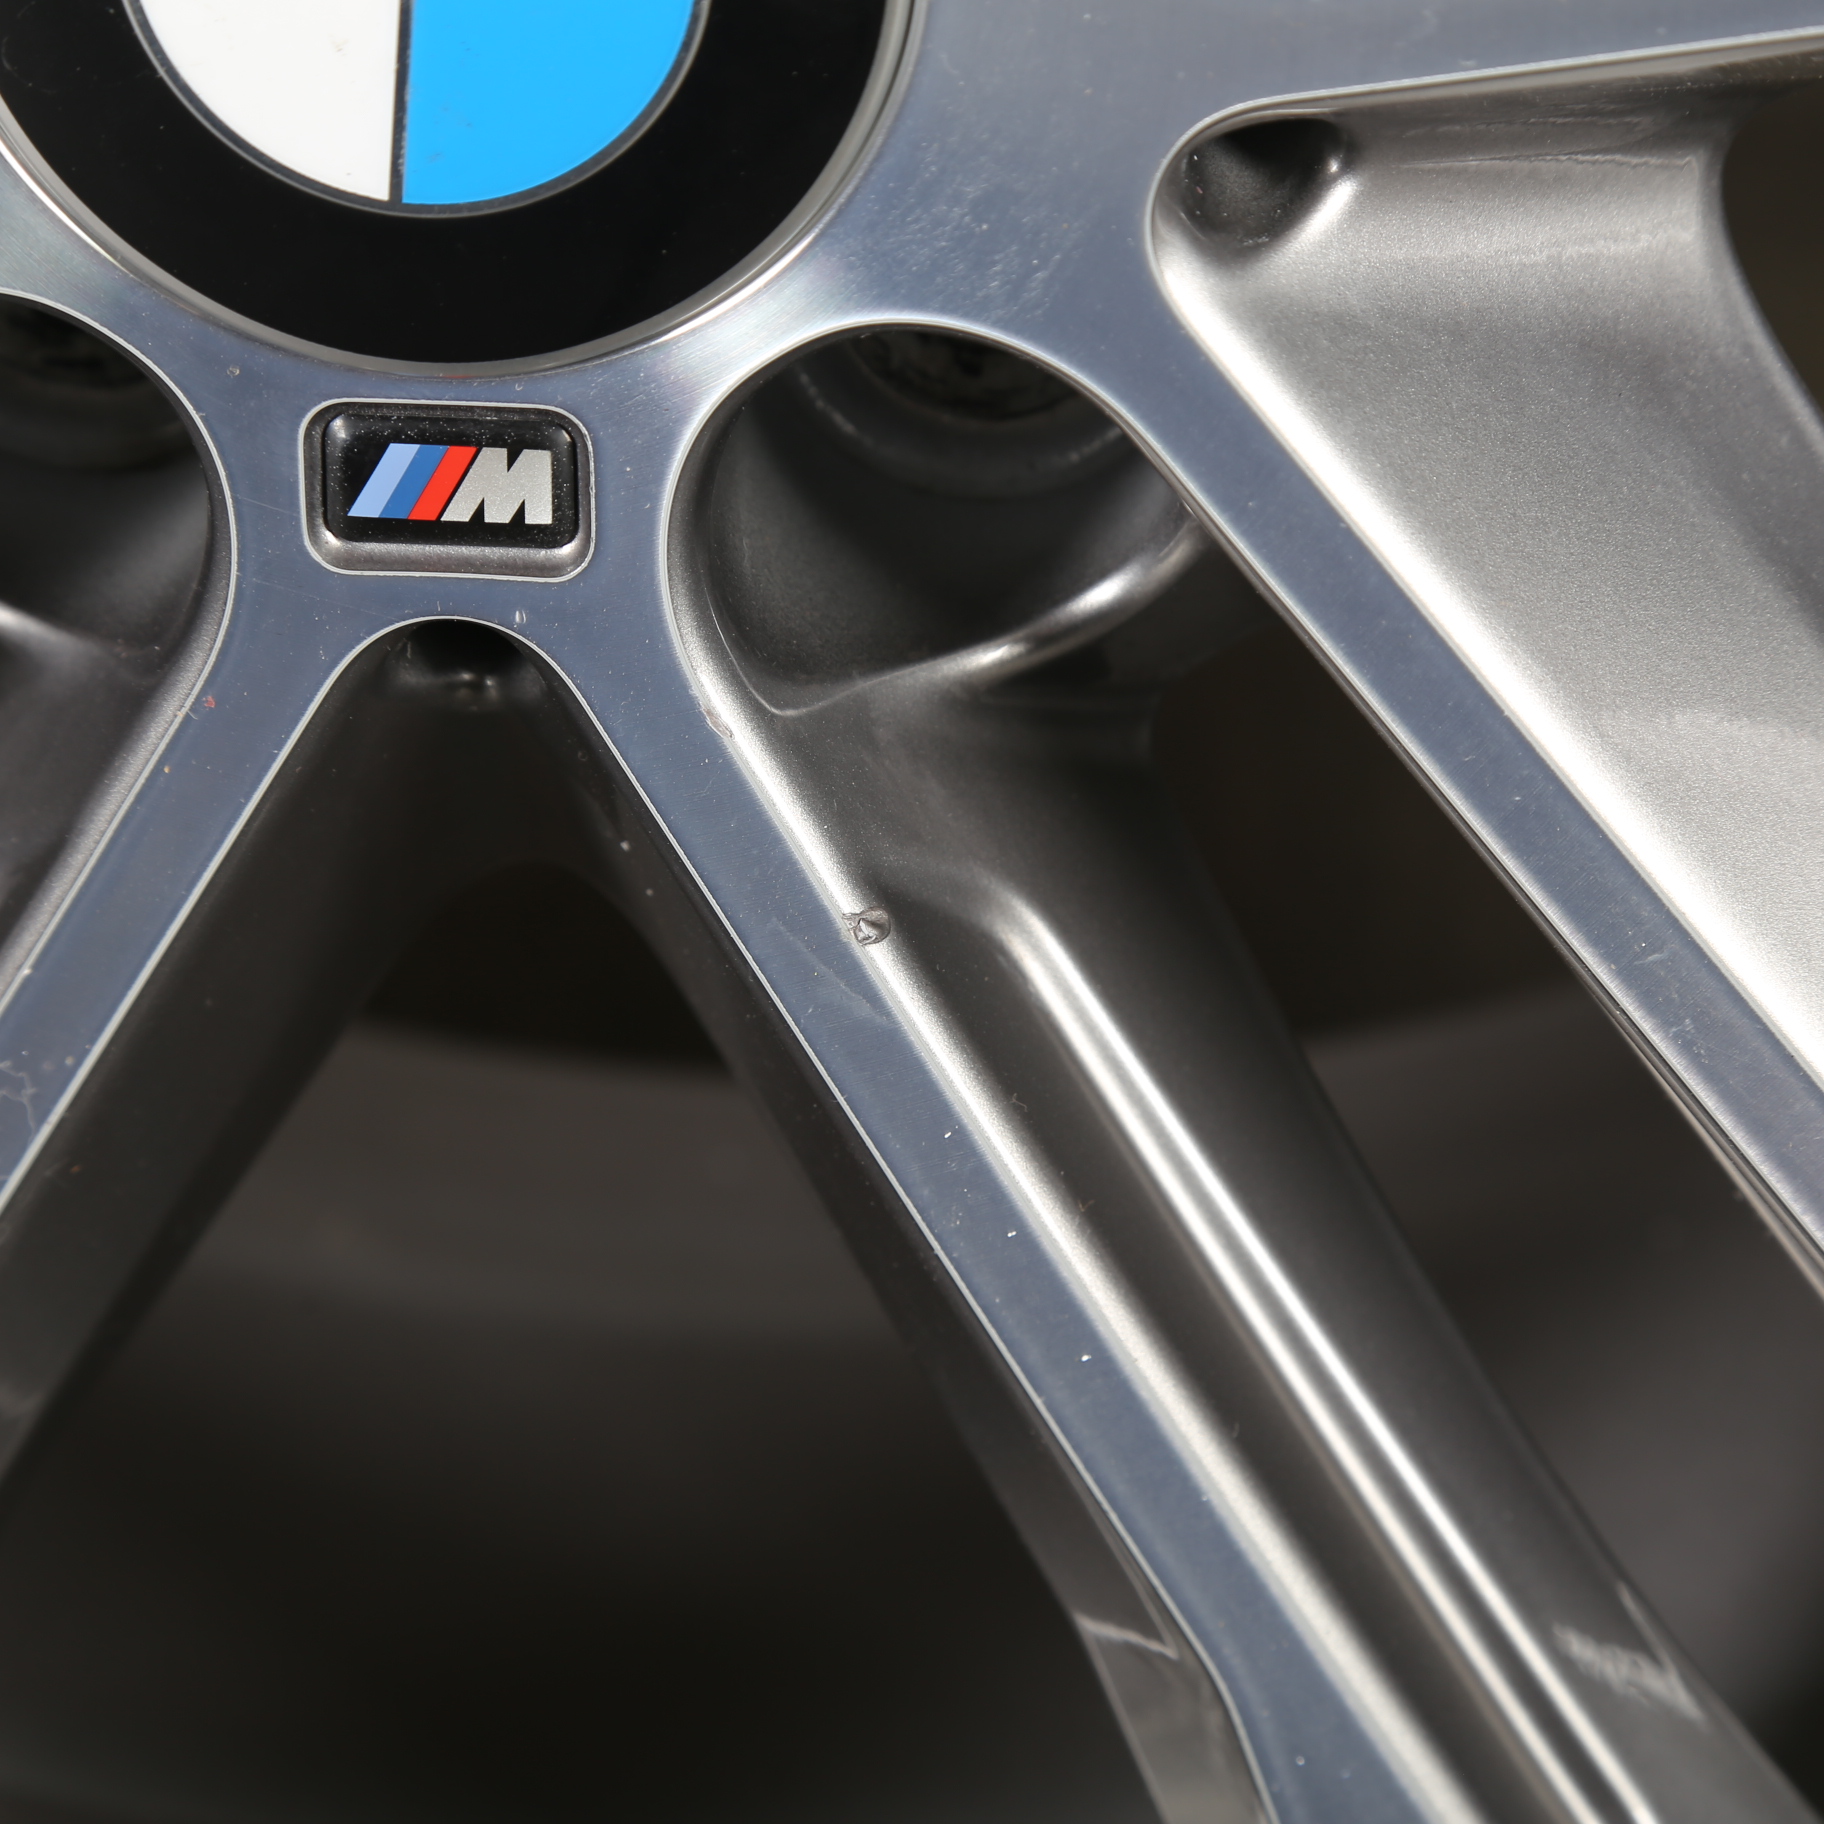 19 pouces roues d'été originales BMW Série 3 F30 F31 Série 4 F32 F33 F36 M704 7856710